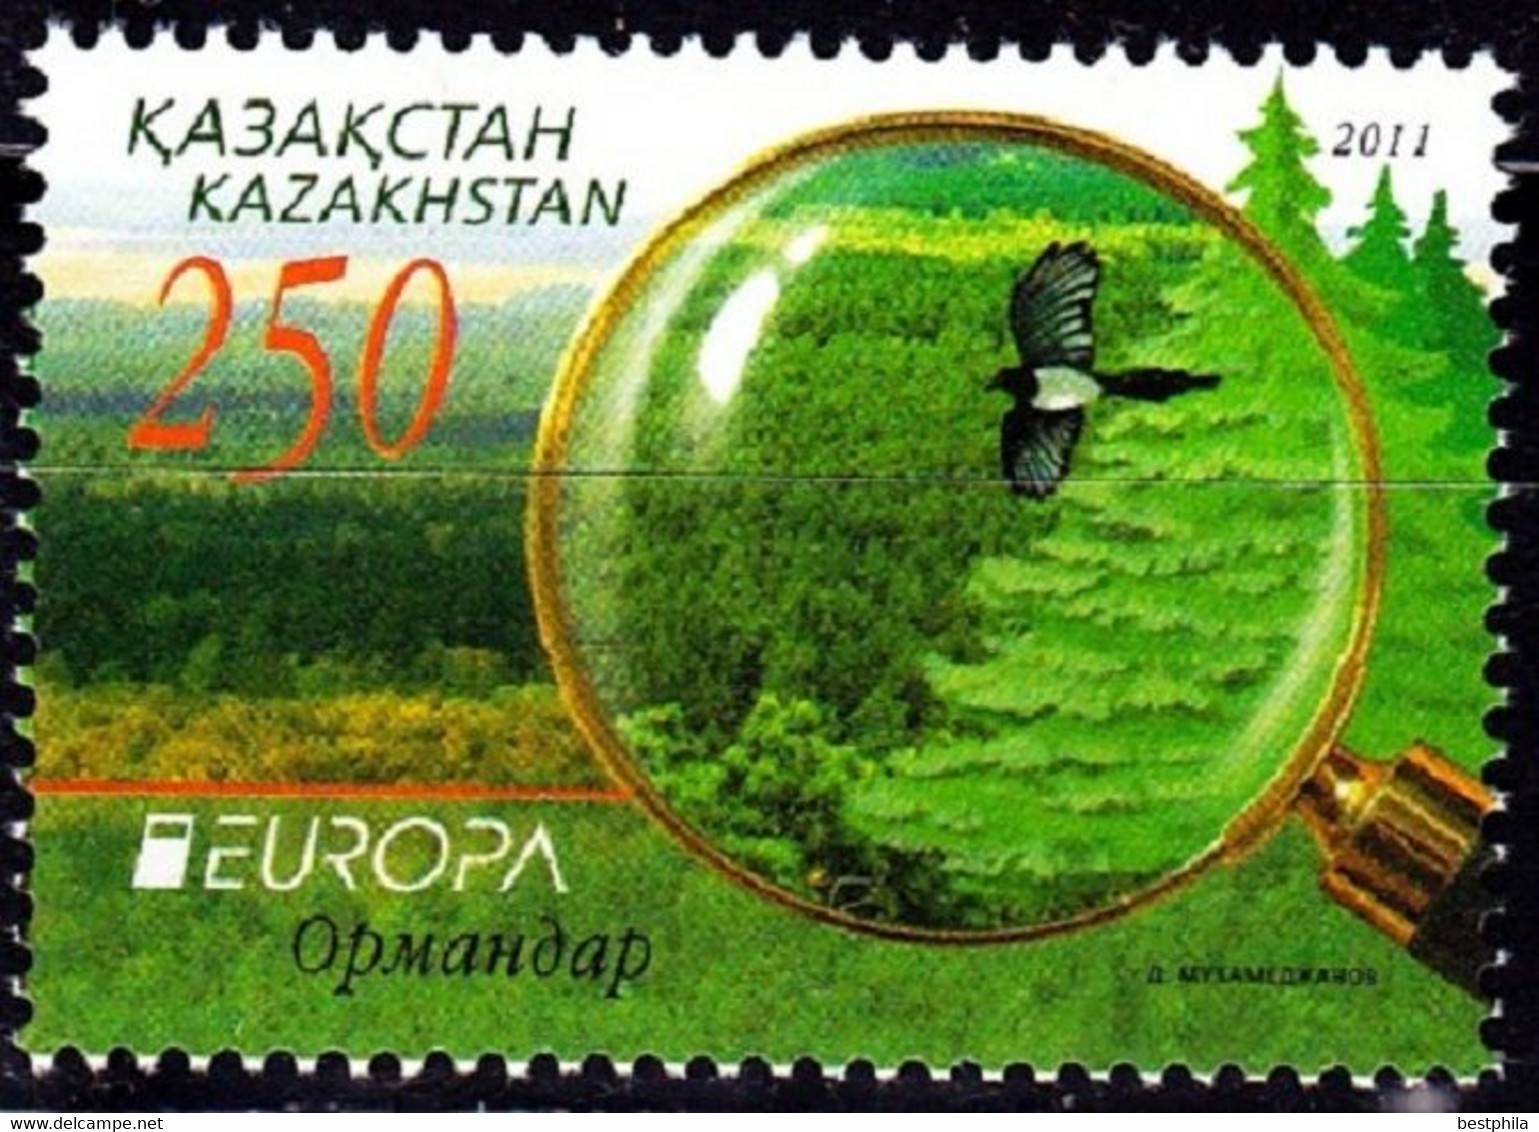 Europa Cept - 2011 - Kazakhstan - (Forest) ** MNH - 2011